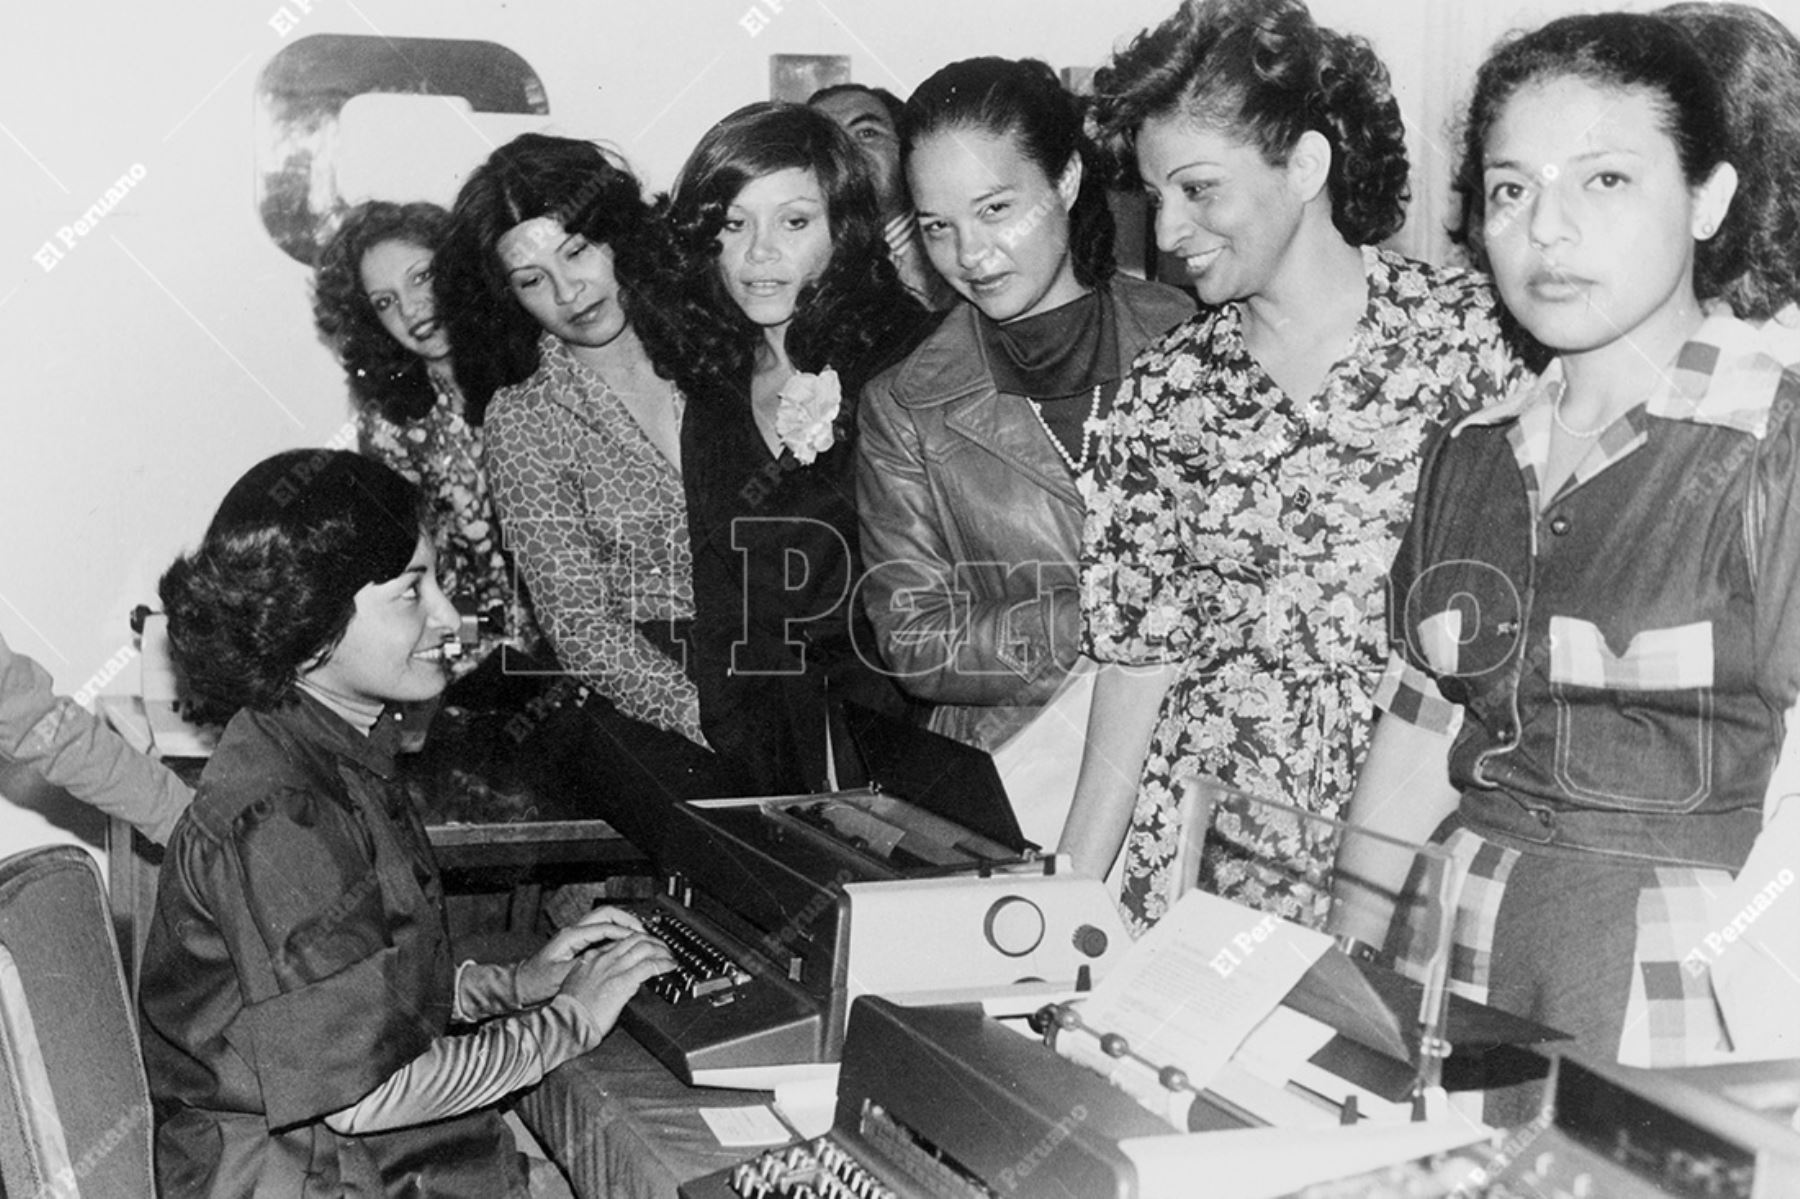 Lima - noviembre 1979 / Las secretarias realizan una amplia gama de tareas administrativas y de apoyo importantes para el funcionamiento eficiente de una empresa o institución pública. Foto: Archivo Histórico de El Peruano